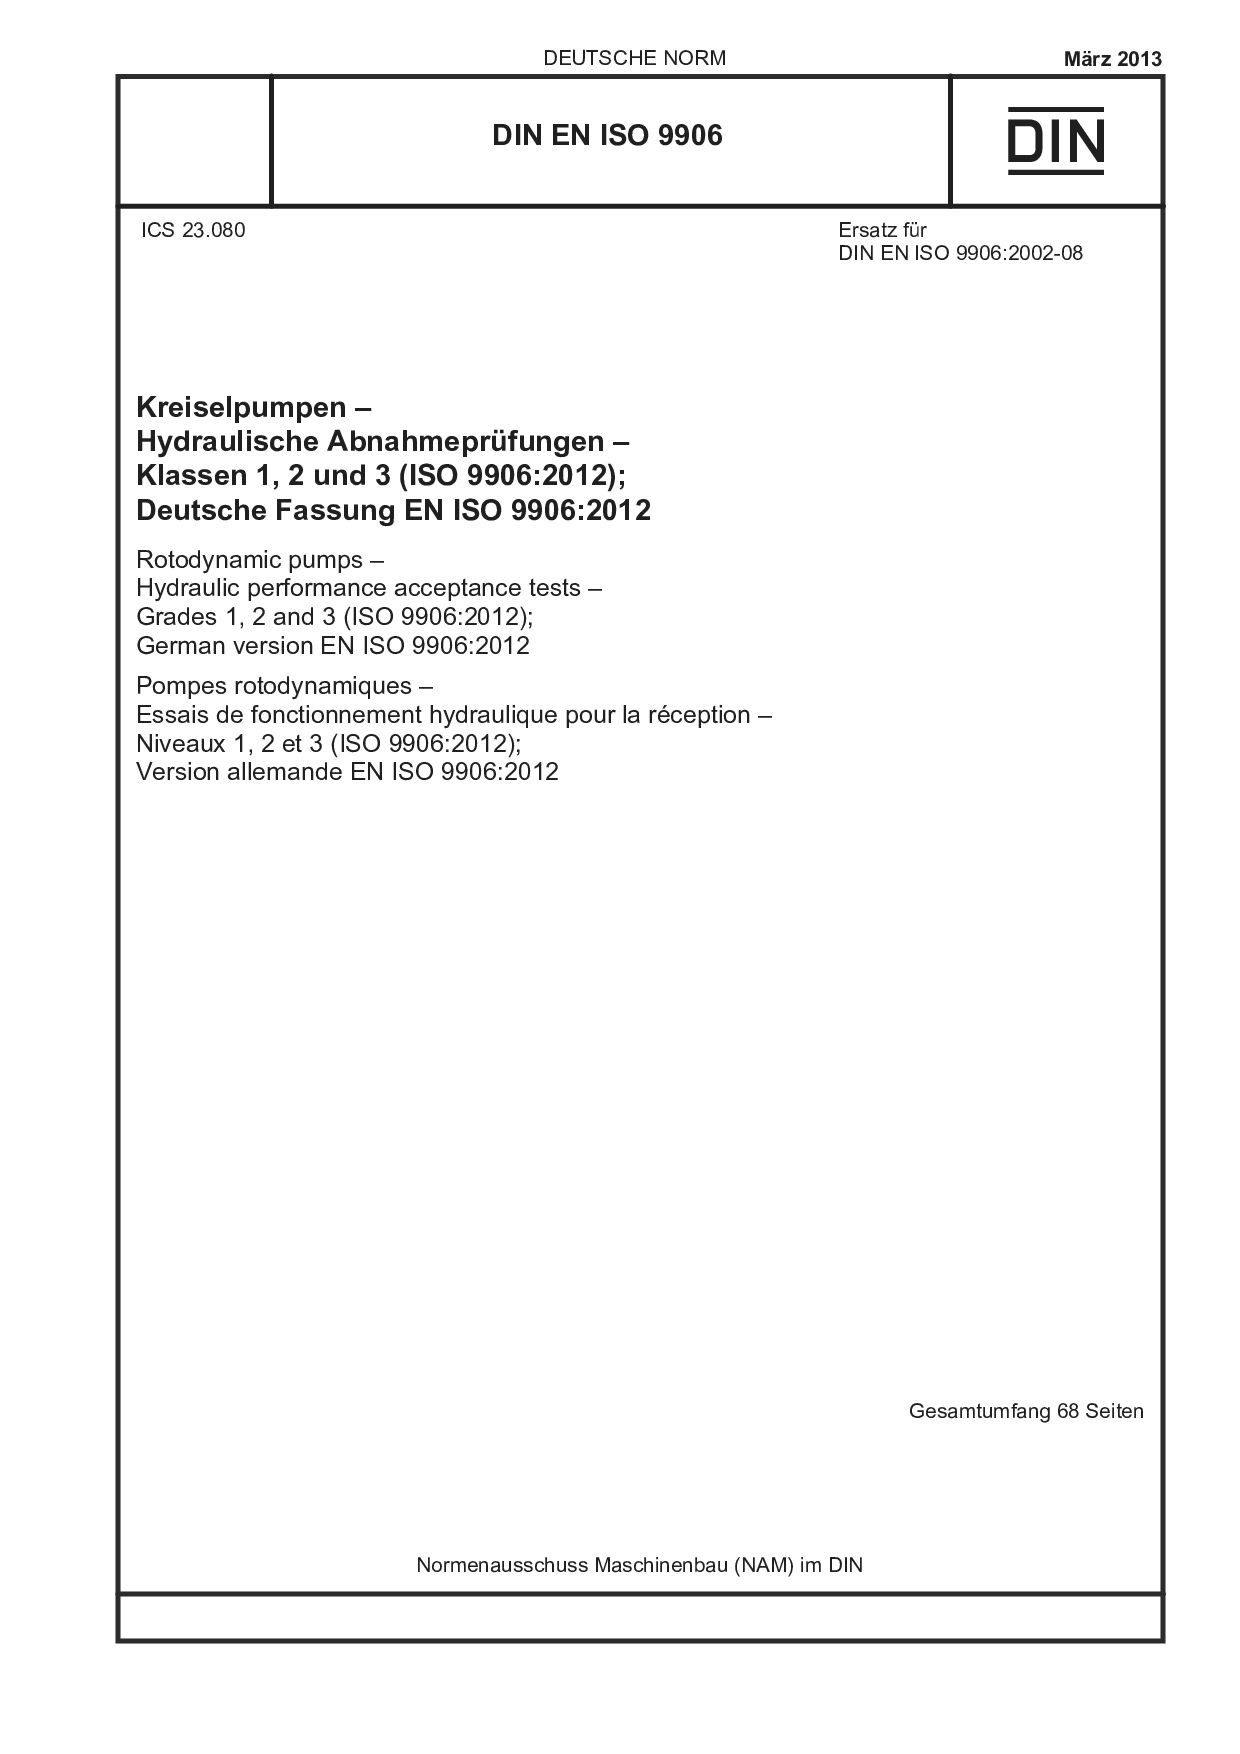 DIN EN ISO 9906:2013